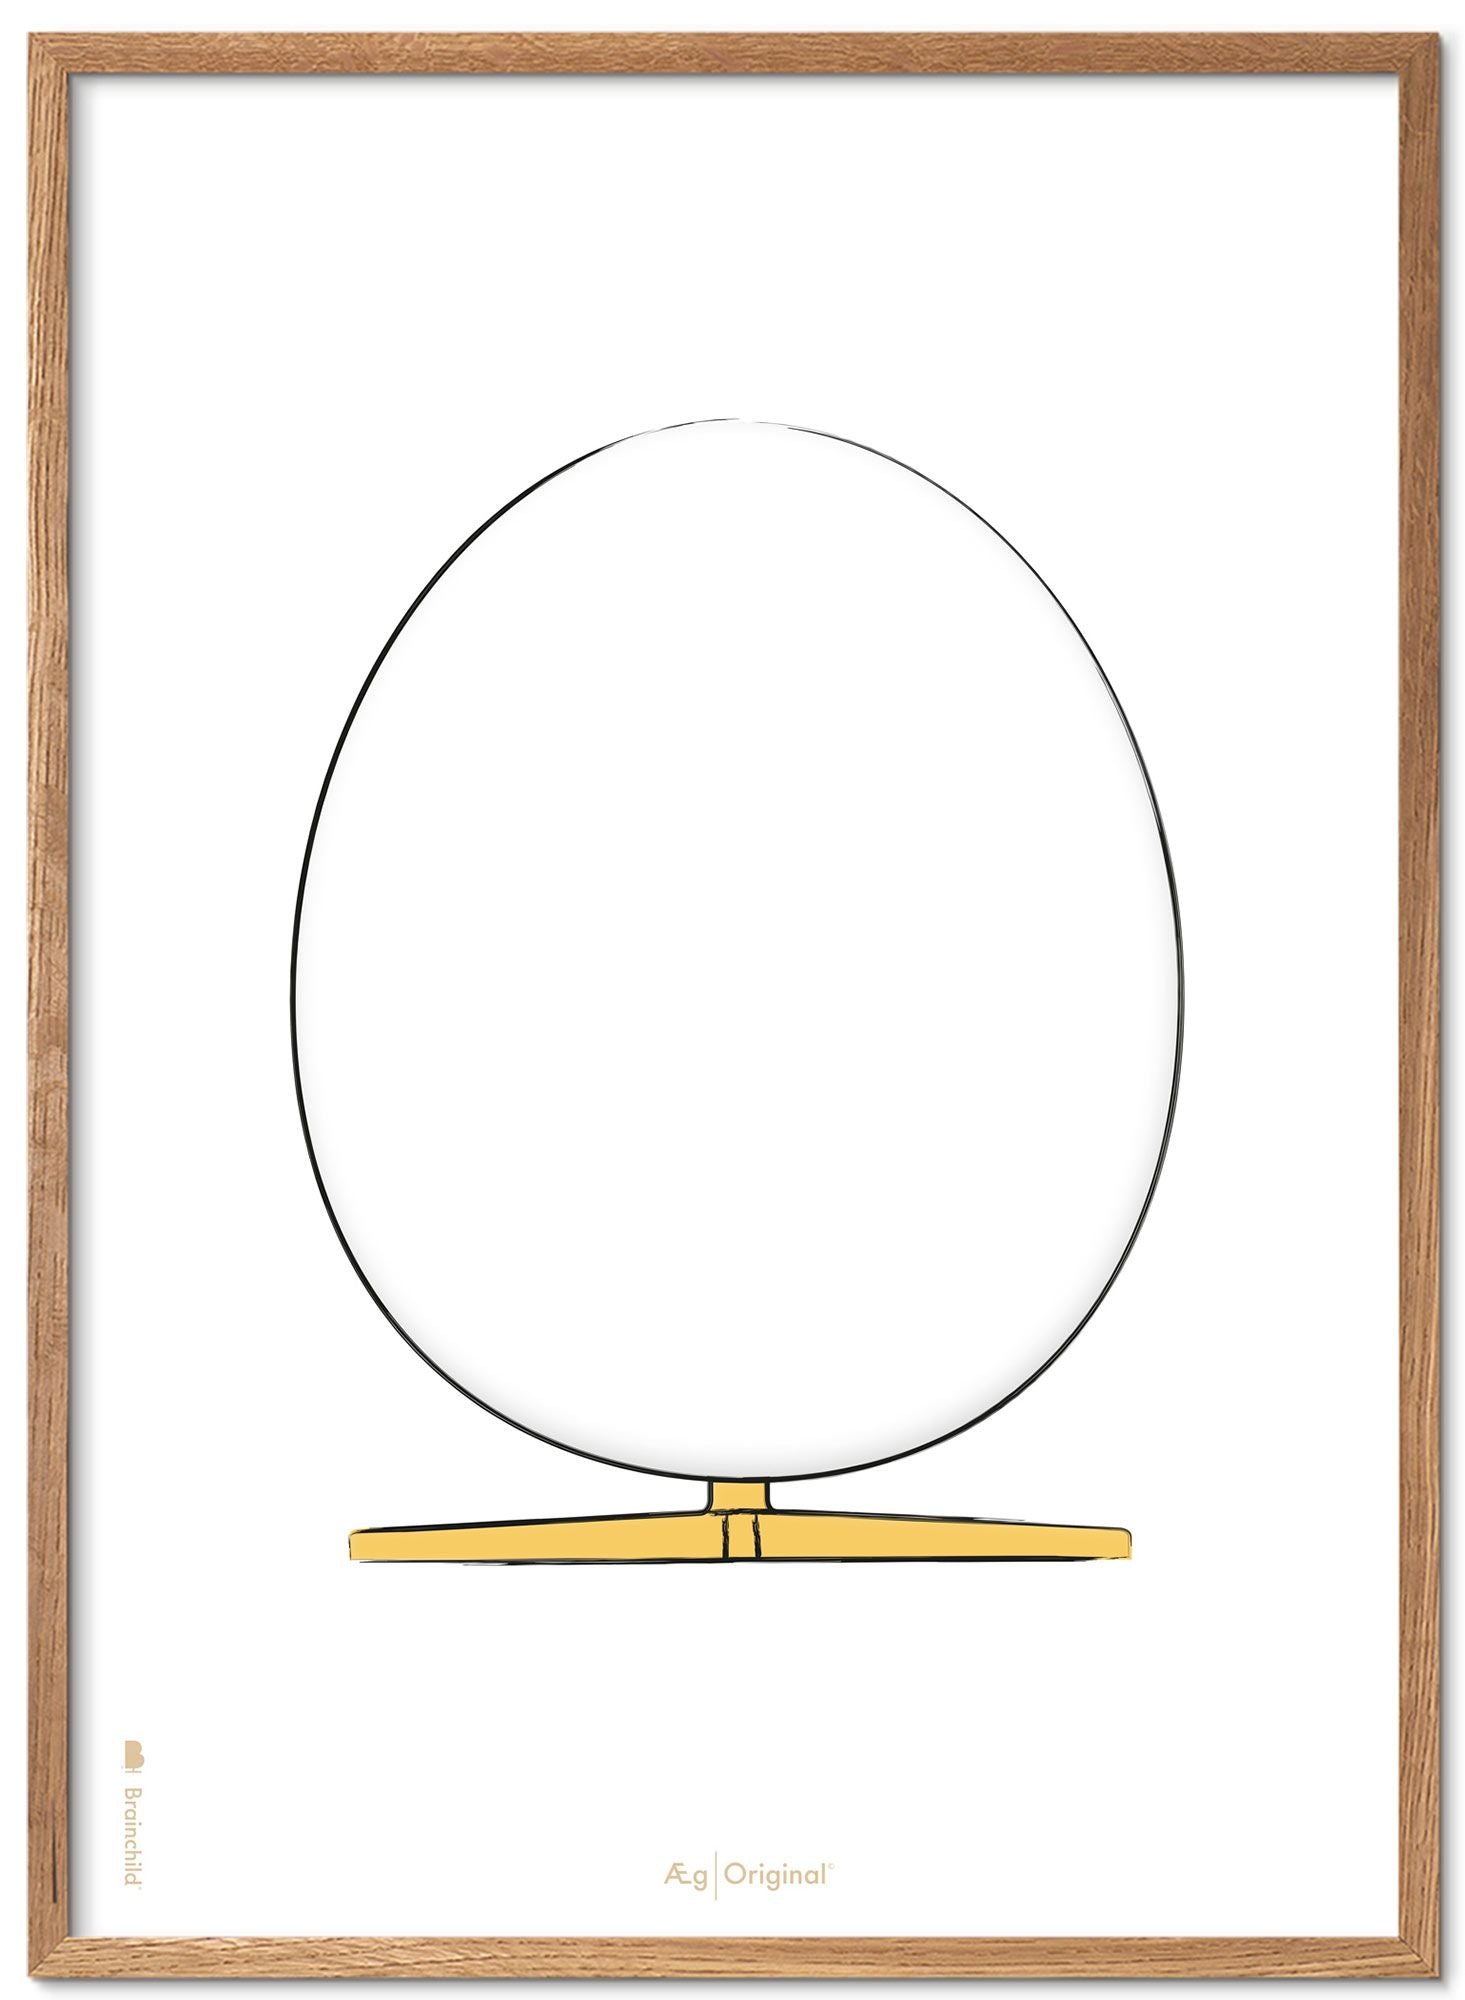 Prepare el marco de póster de boceto de diseño de huevo hecho de madera clara de 70x100 cm, fondo blanco